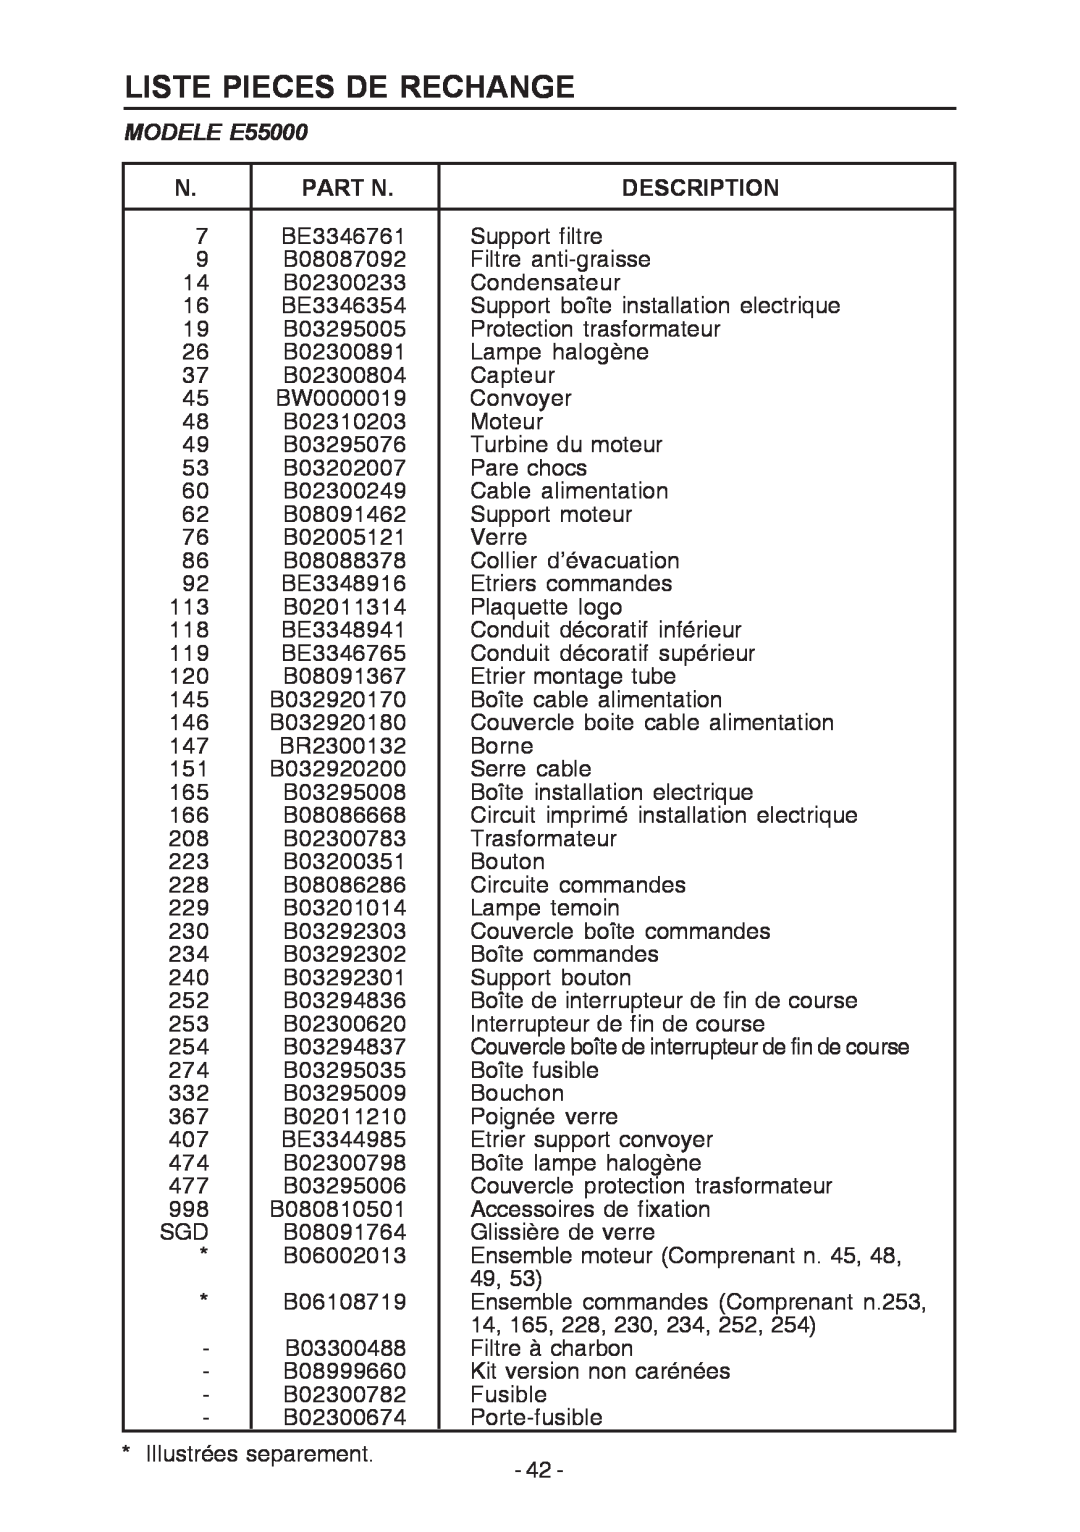 Broan manual Liste Pieces De Rechange, Part N, MODELE E55000, Description 